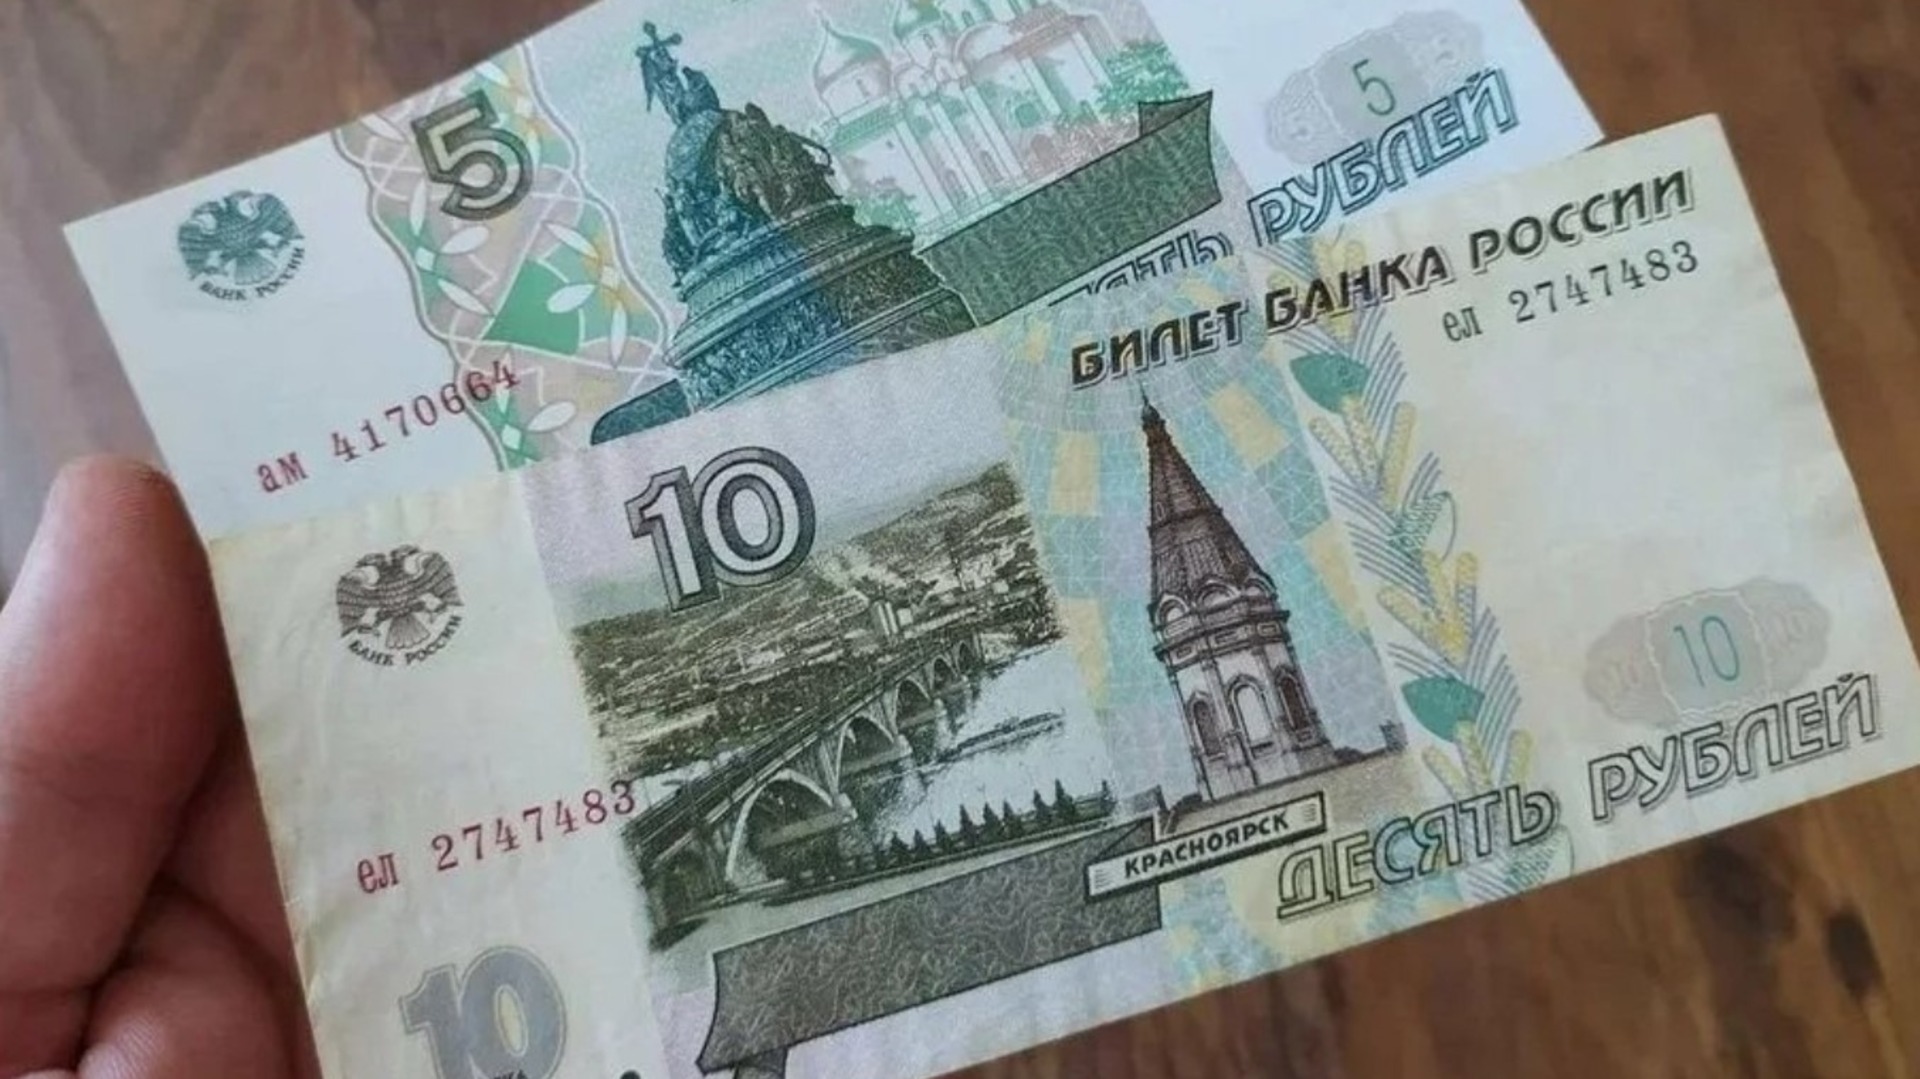 5 рублей вернуться. Бумажные деньги 5 и 10 рублей. 5 И 10 рублей бумажные. Новая купюра 5 рублей. 10 Рублей бумажные.